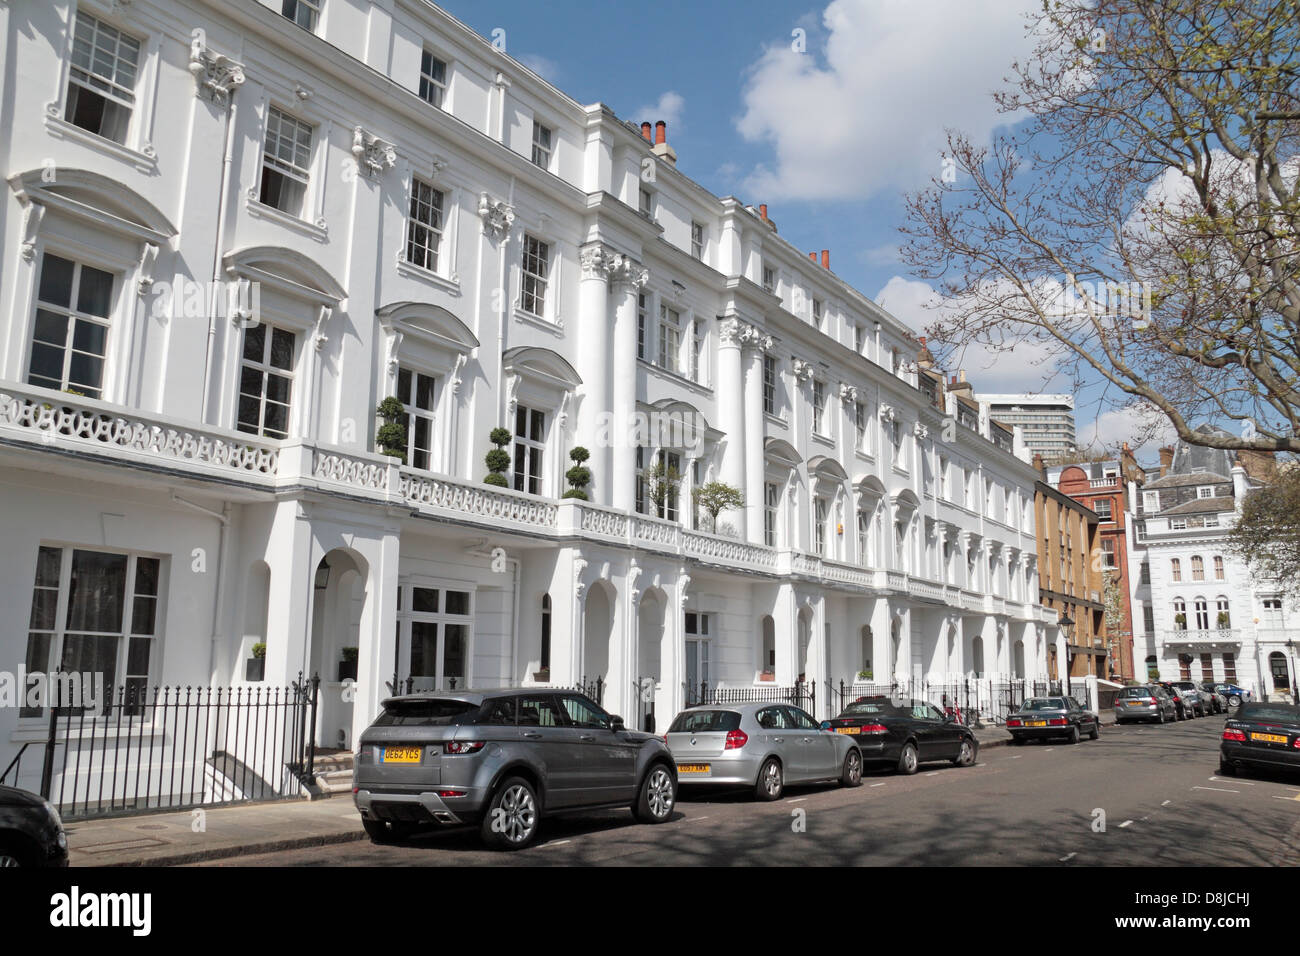 Vue générale des propriétés sur Hereford Square dans le quartier de South Kensington, London SW7, au Royaume-Uni. Banque D'Images